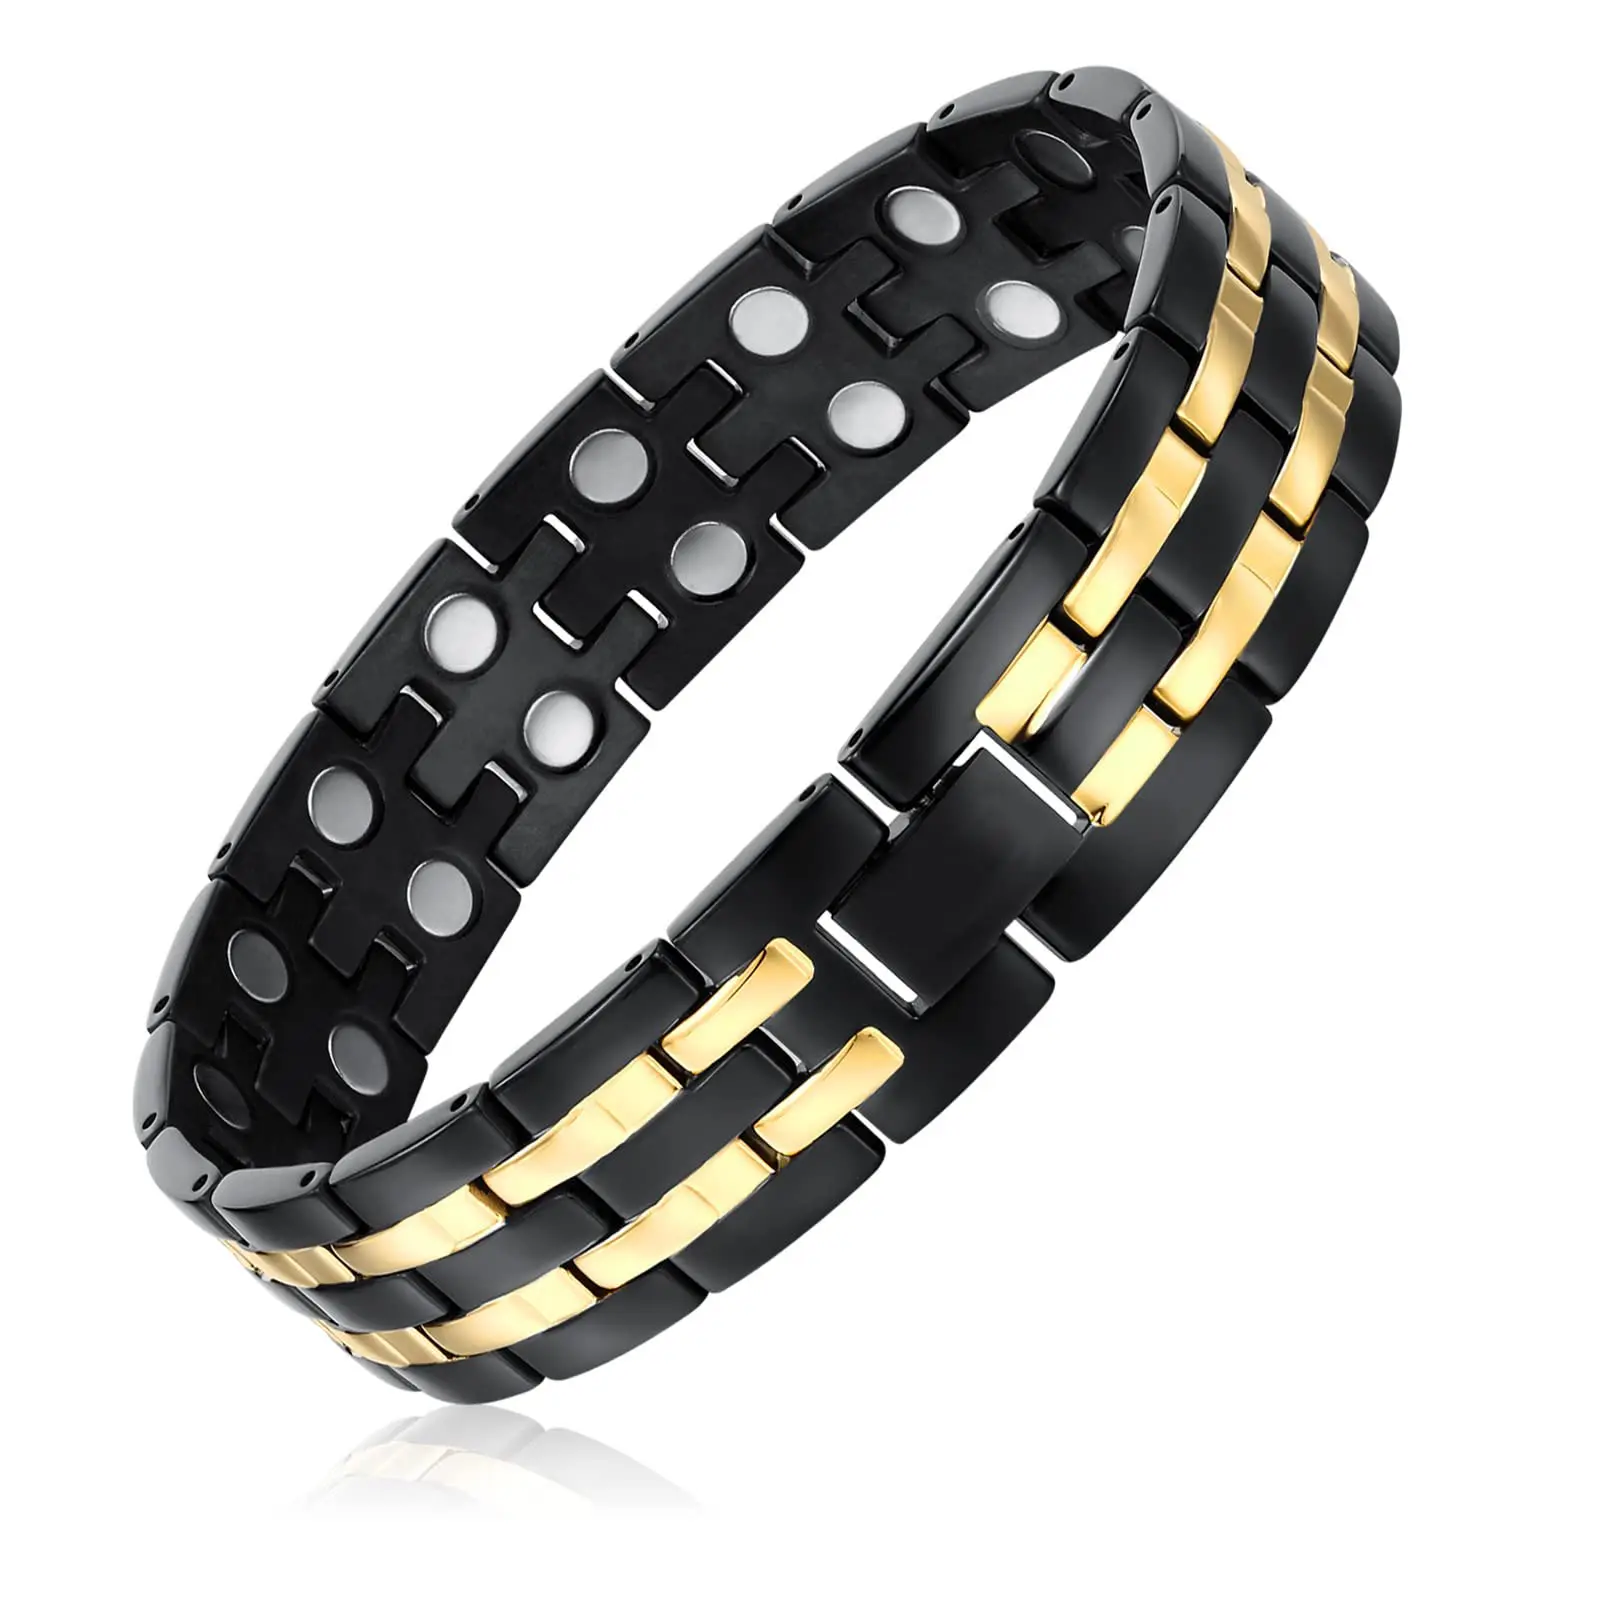 Vente chaude bracelet magnétique coeur énergie magnétique cuivre bracelet fermoir aimant bracelet pour homme